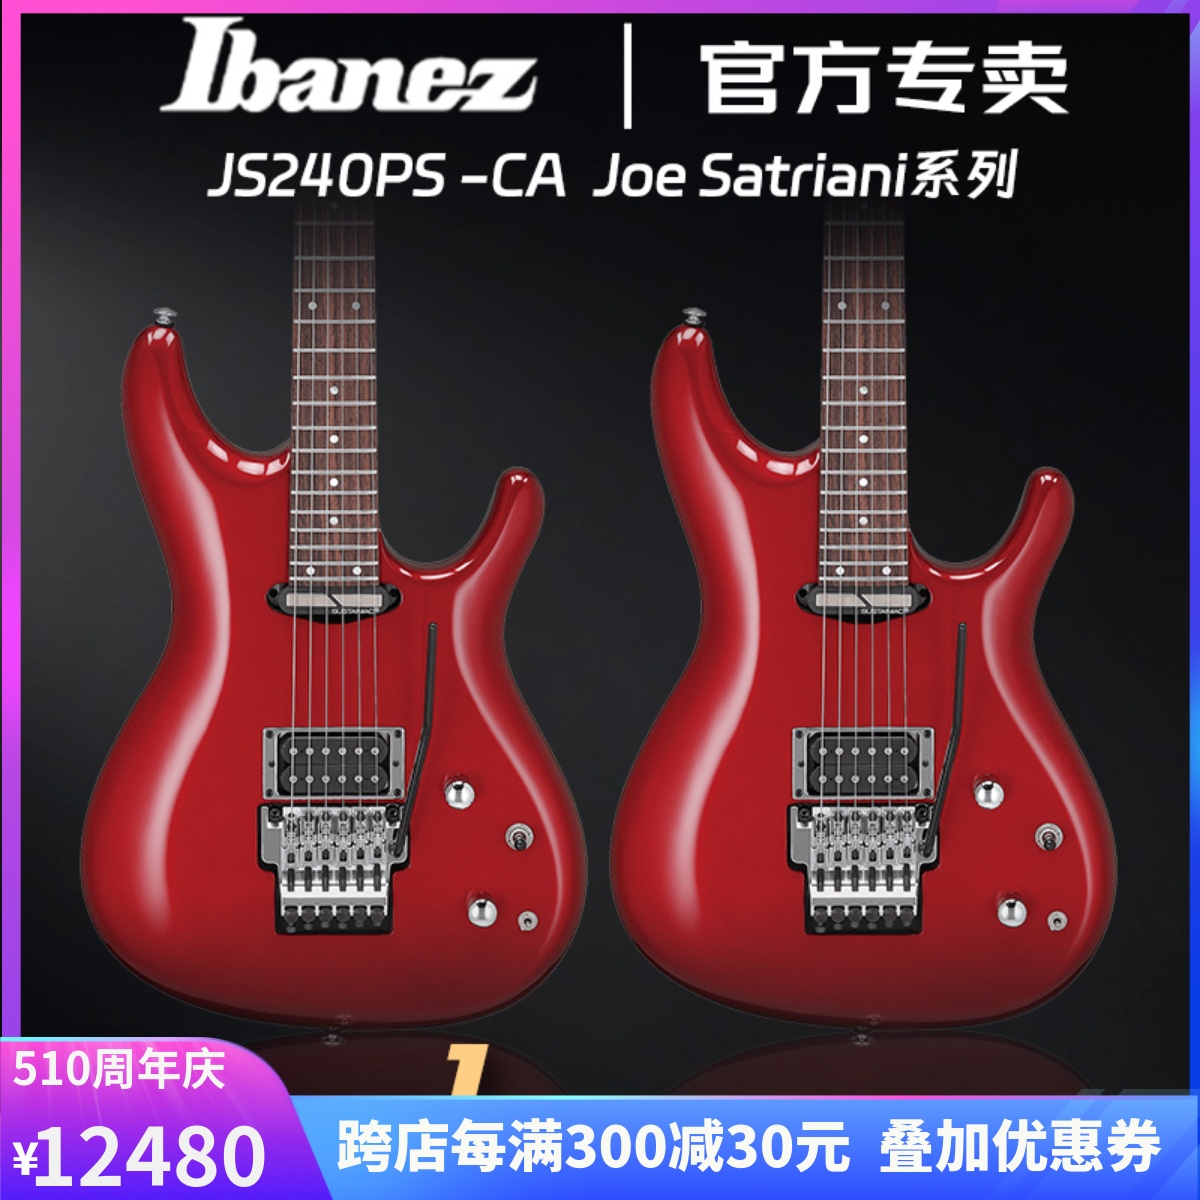 正品Ibanez电吉他依班娜JS240PS大双摇电吉他Joe Satriani签名款-封面